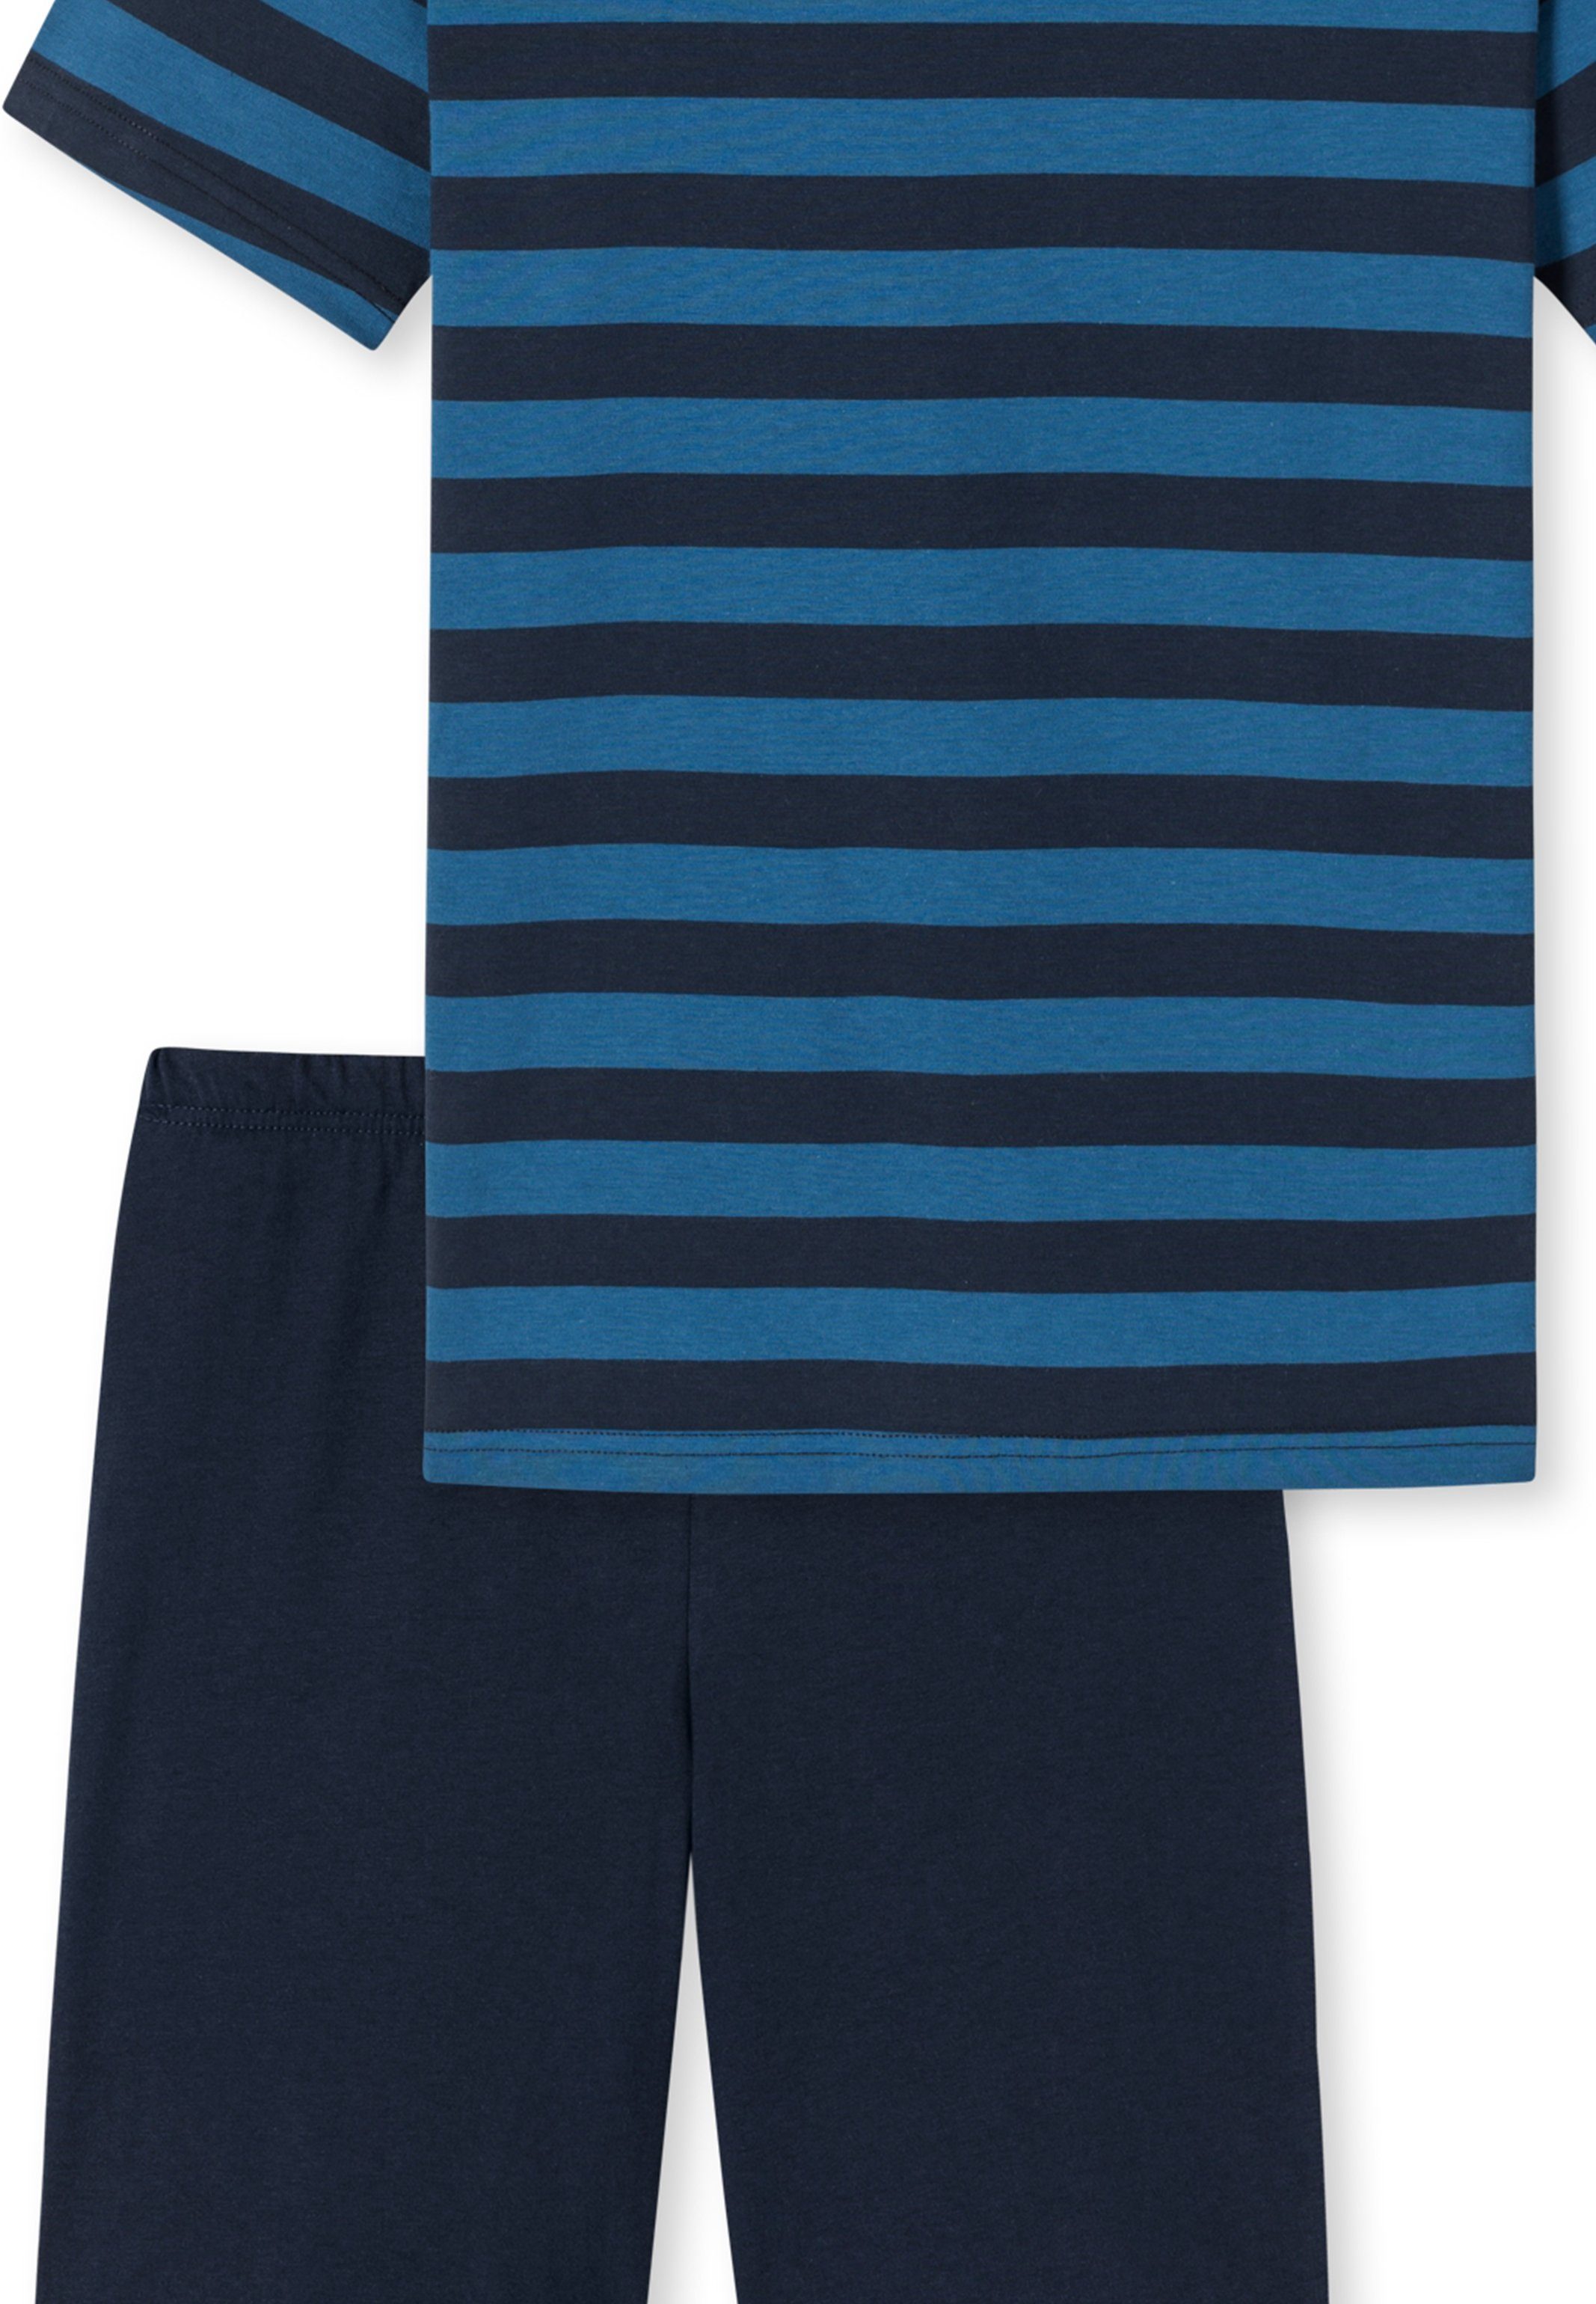 Schiesser Pyjama Teens Boys mit (Set, Baumwolle Schlafanzug blau Shirt Streifen-Muster 2 - Kurz tlg) - Kurzarm